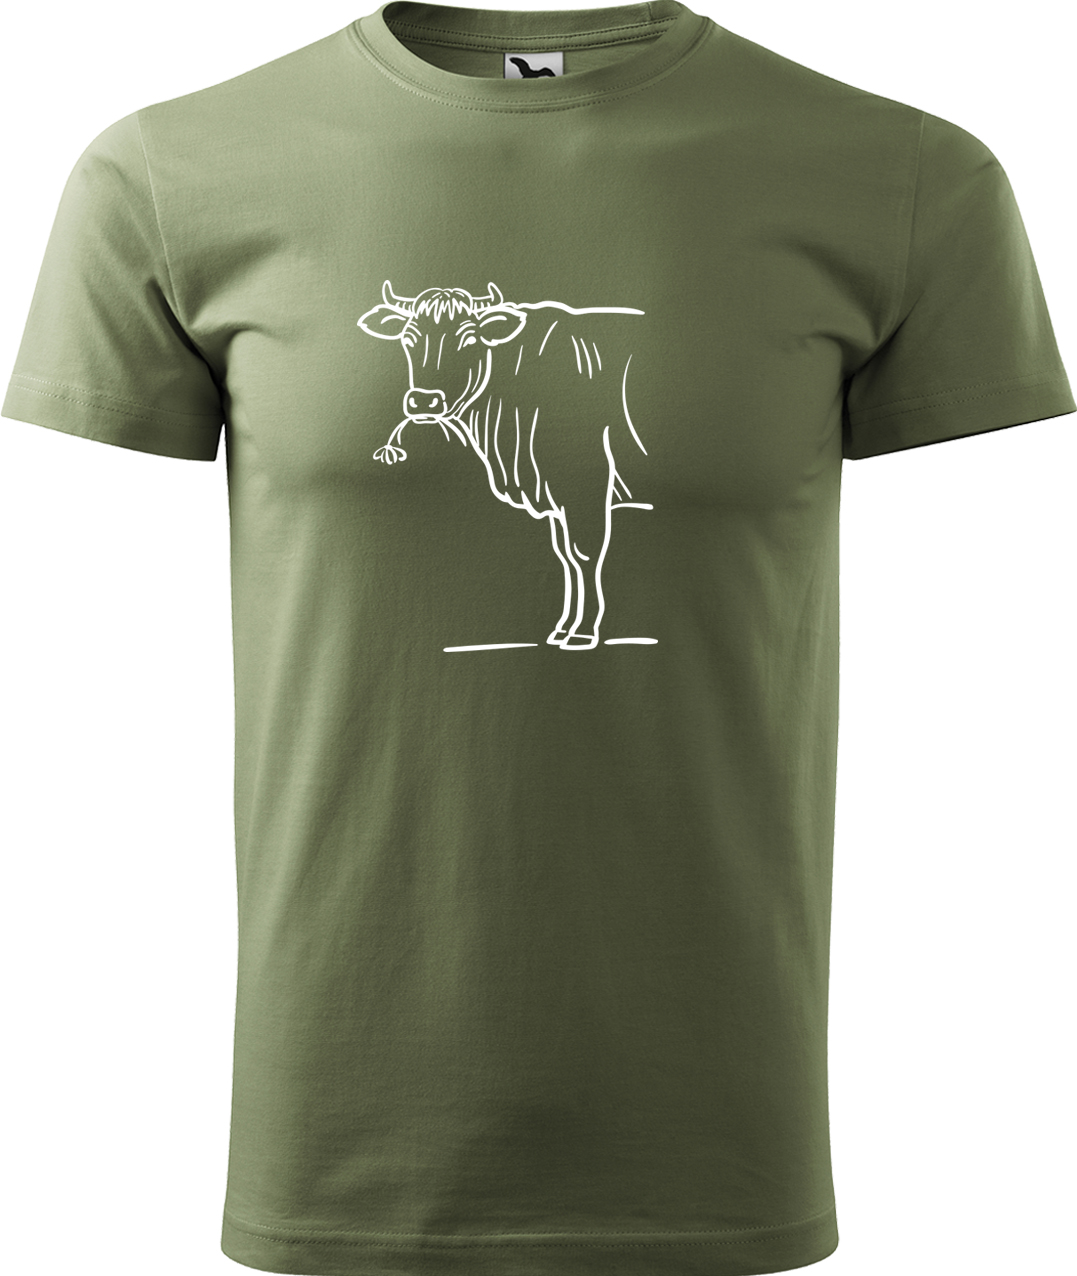 Pánské tričko s krávou - Býk Velikost: M, Barva: Světlá khaki (28), Střih: pánský